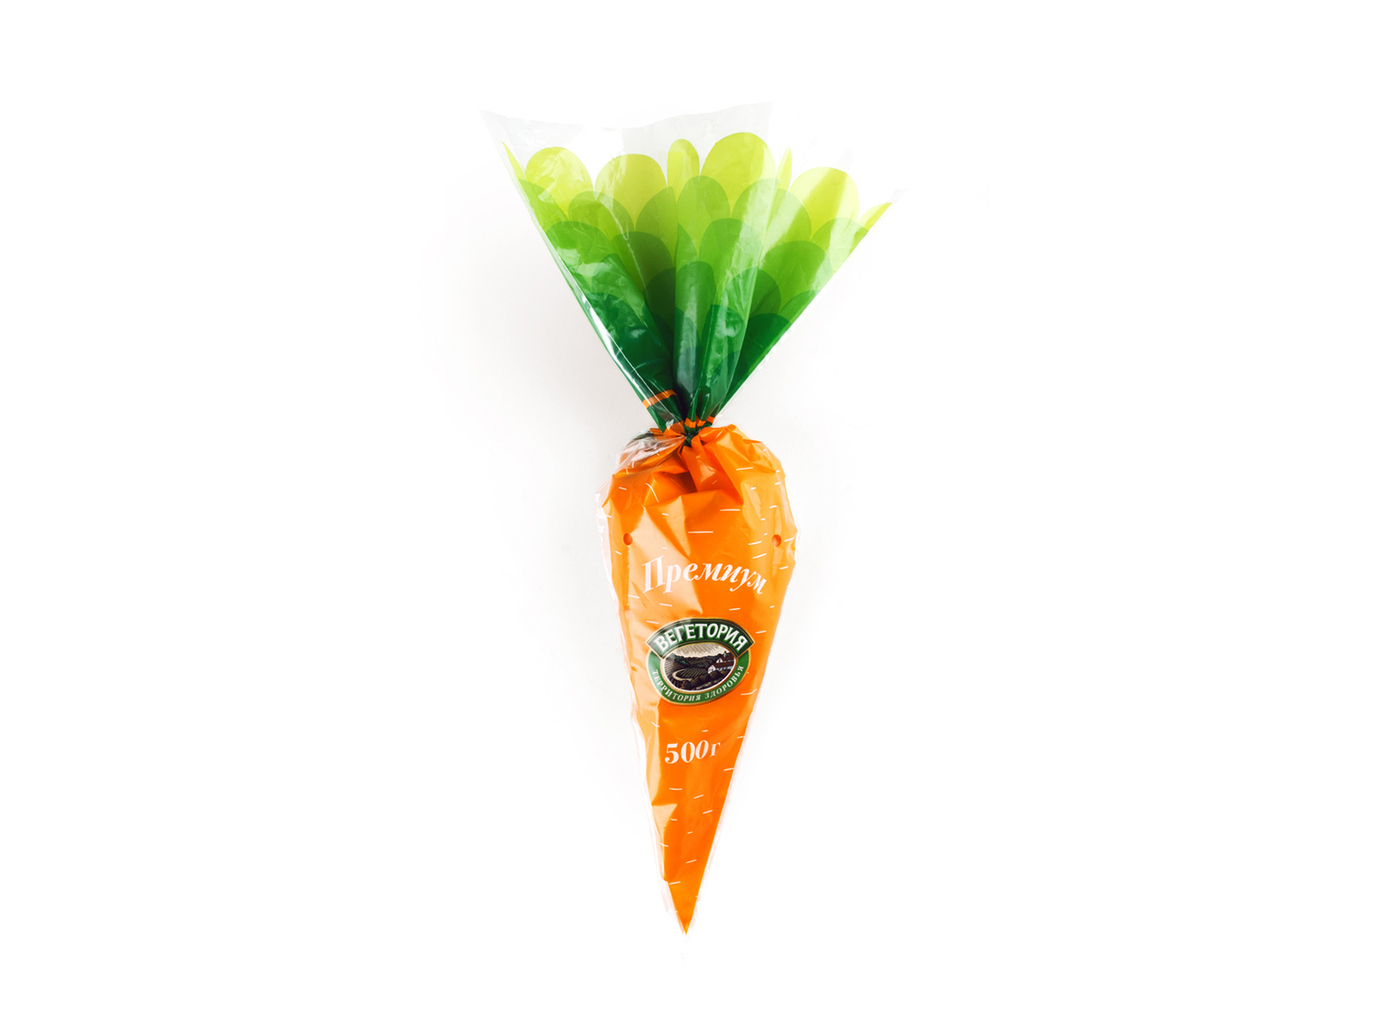 Vegetoria-carrot-01.jpg